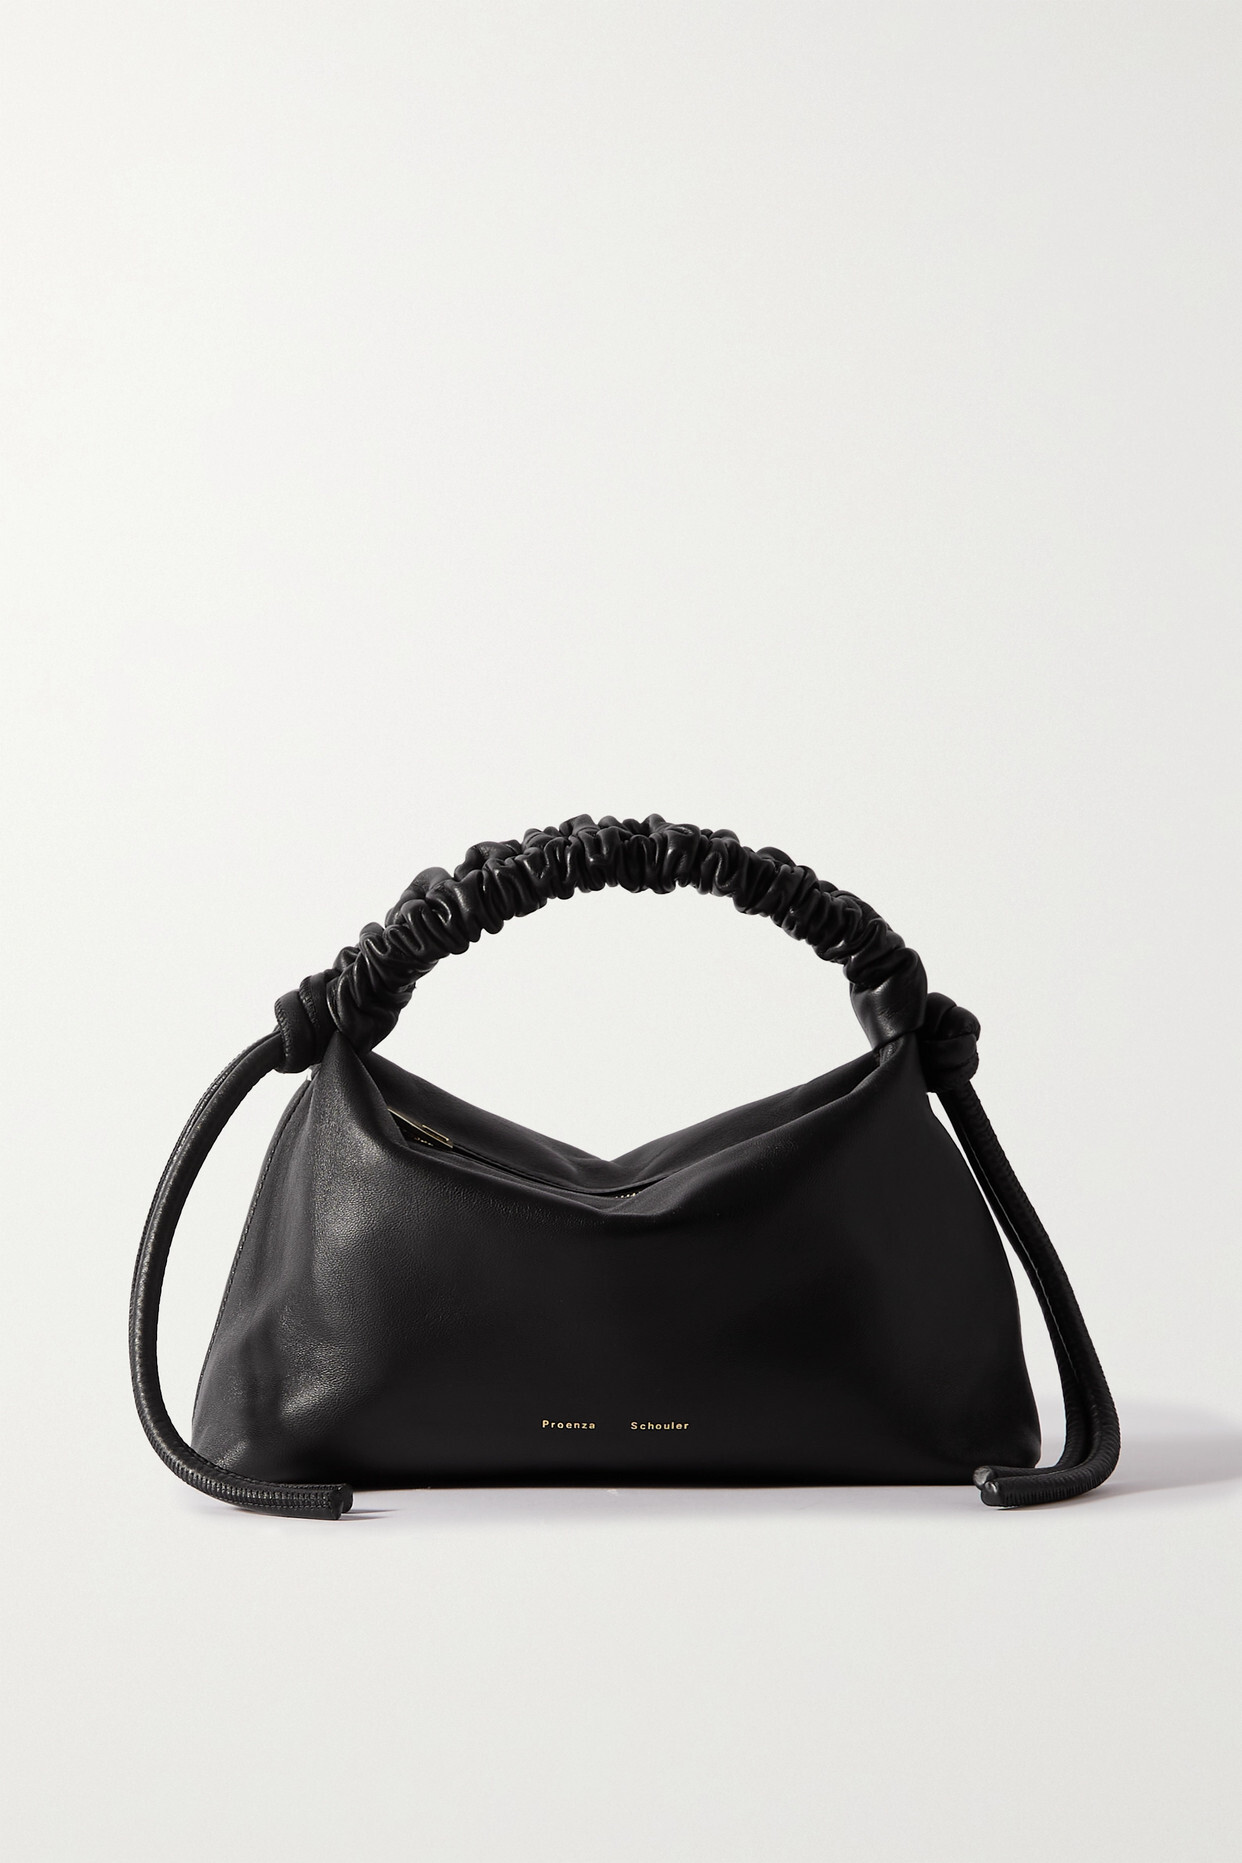 Proenza Schouler - Mini Ruched Leather Shoulder Bag - Black